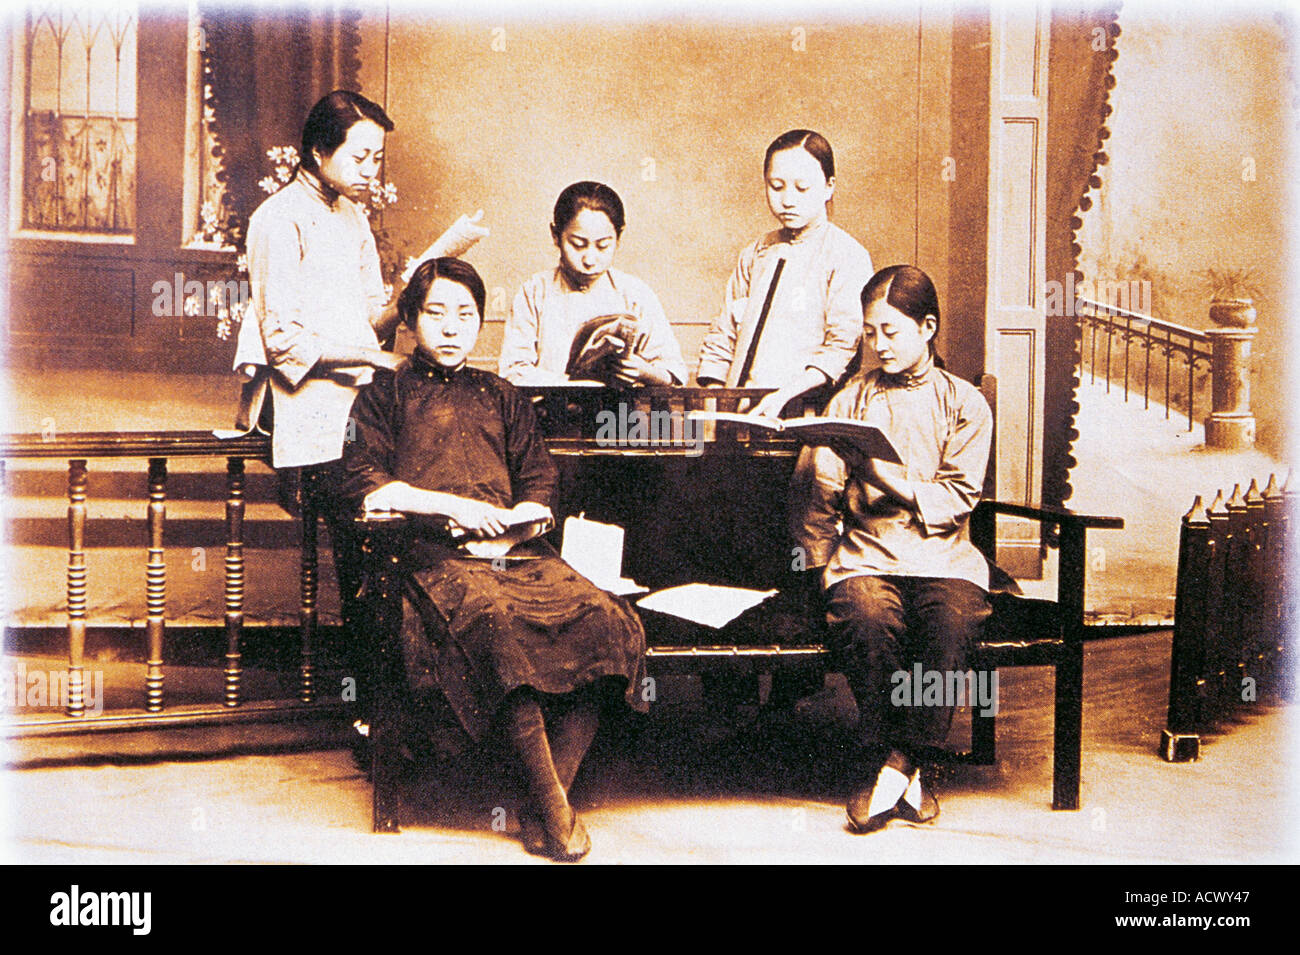 Una vieja fotografía de chicas chinas a principios de 1900 Foto de stock